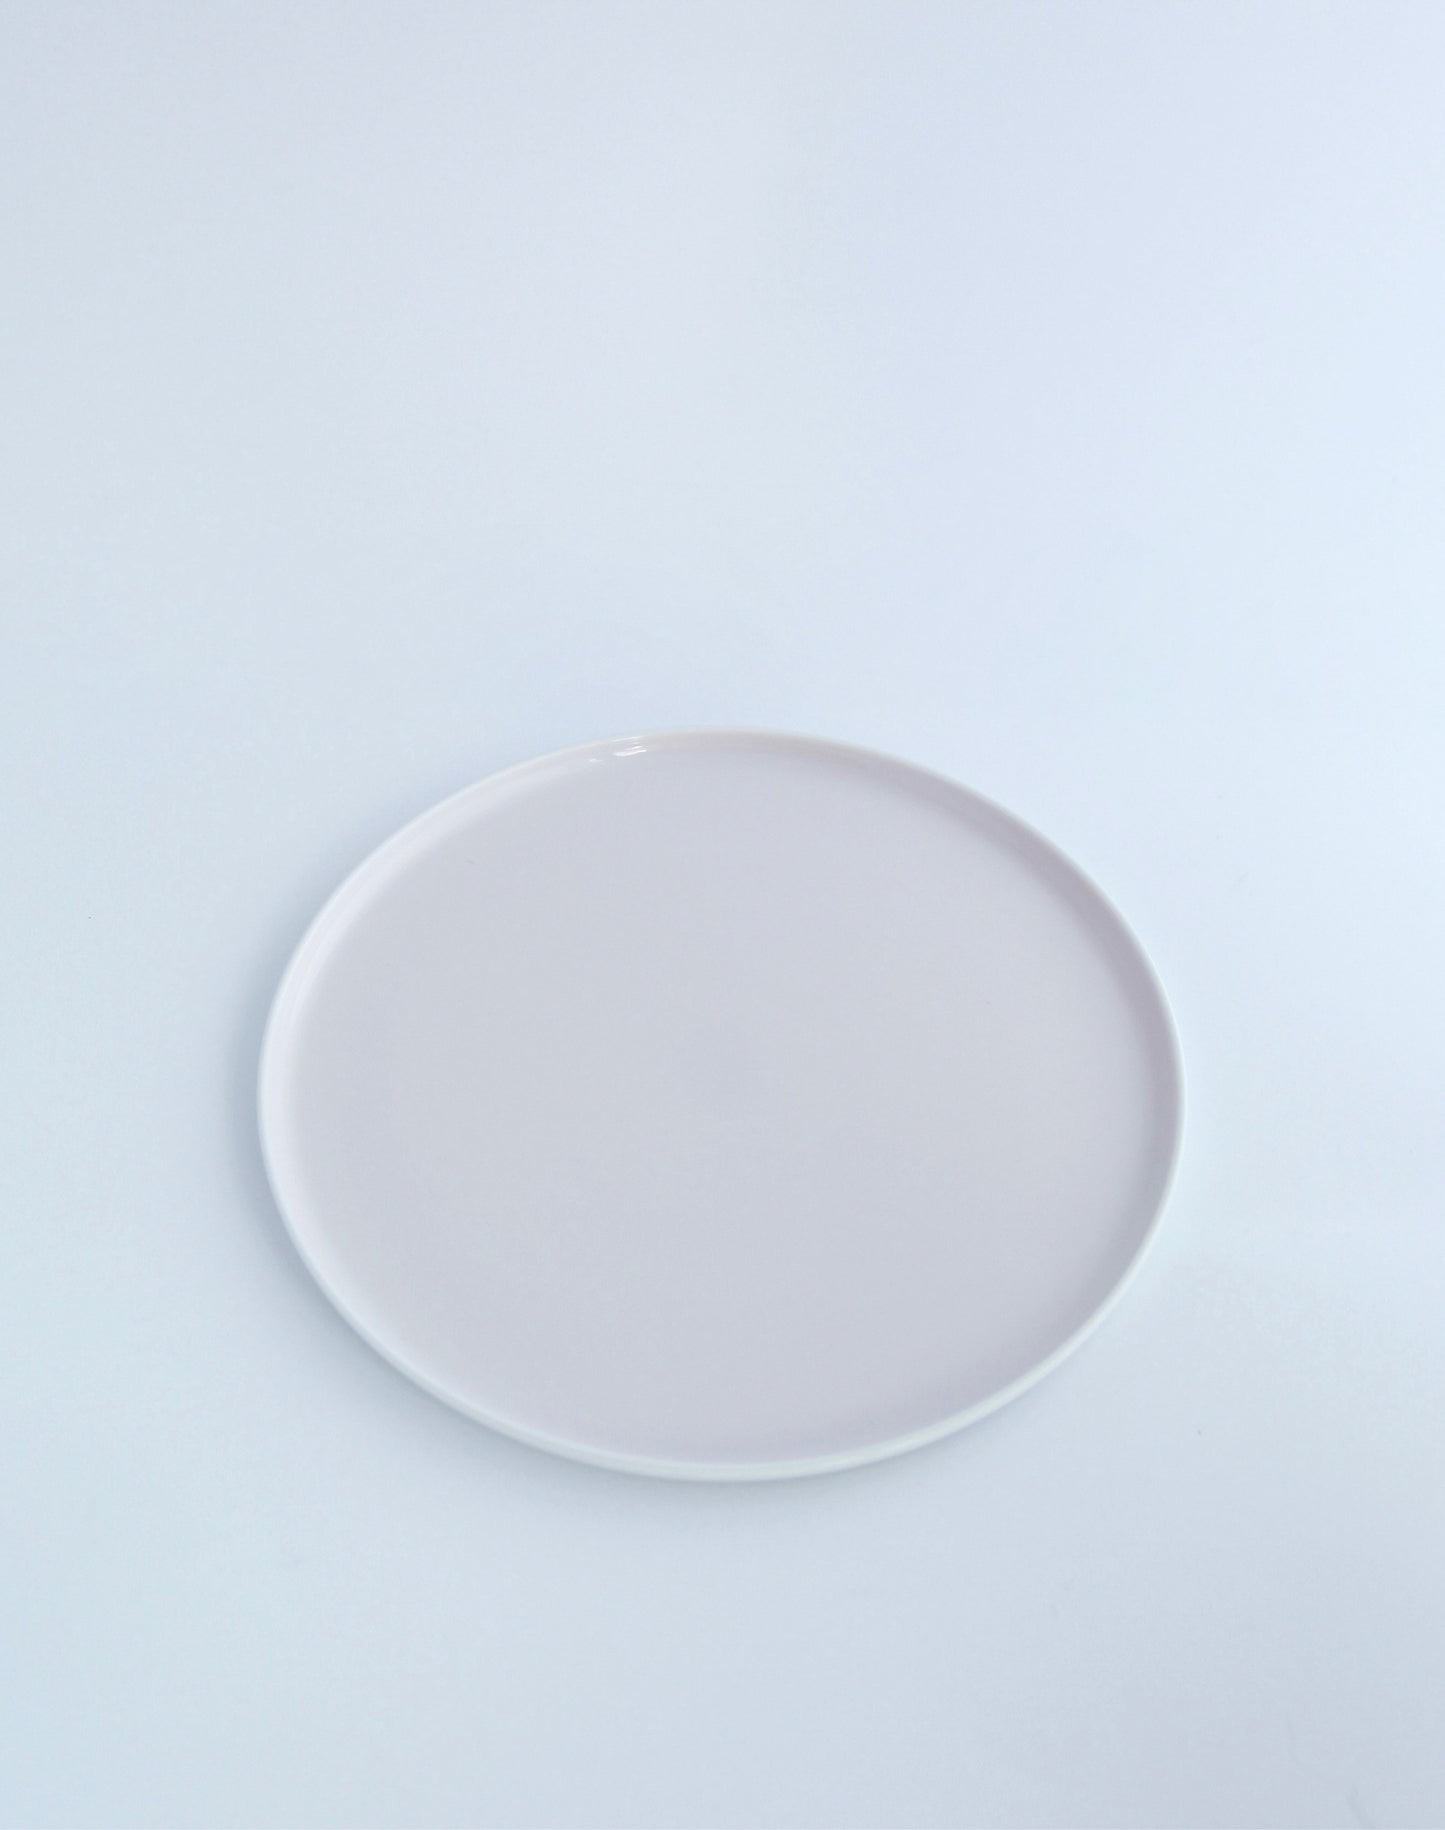 Scholten & Baijings 1616 arita japan dinner plate